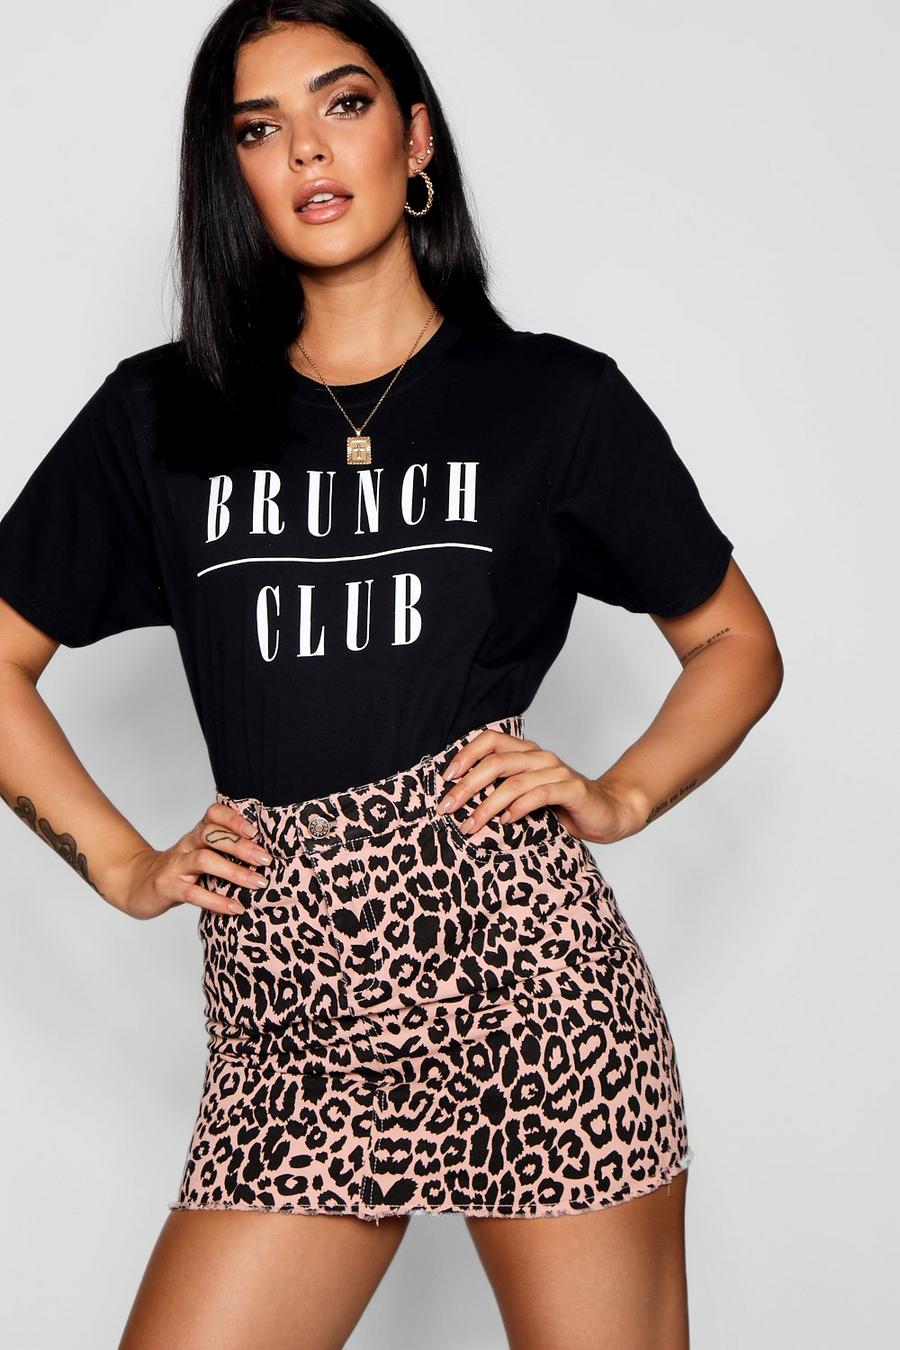 Camiseta con eslogan “Brunch Club” image number 1